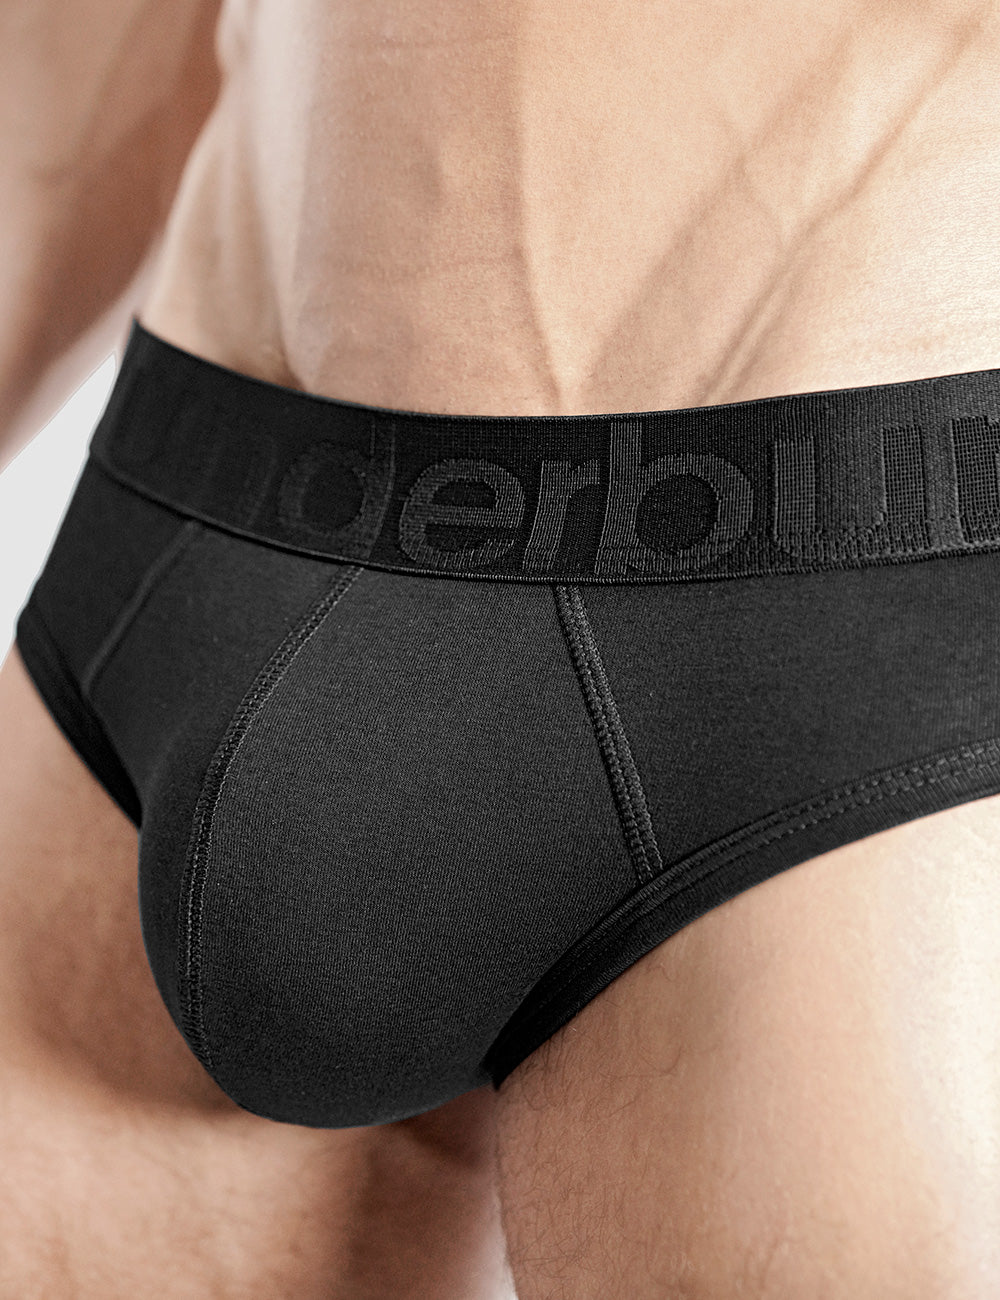 Buy Men Underwear Online  Men's Underwear & Innerwear – Rounderbum LLC